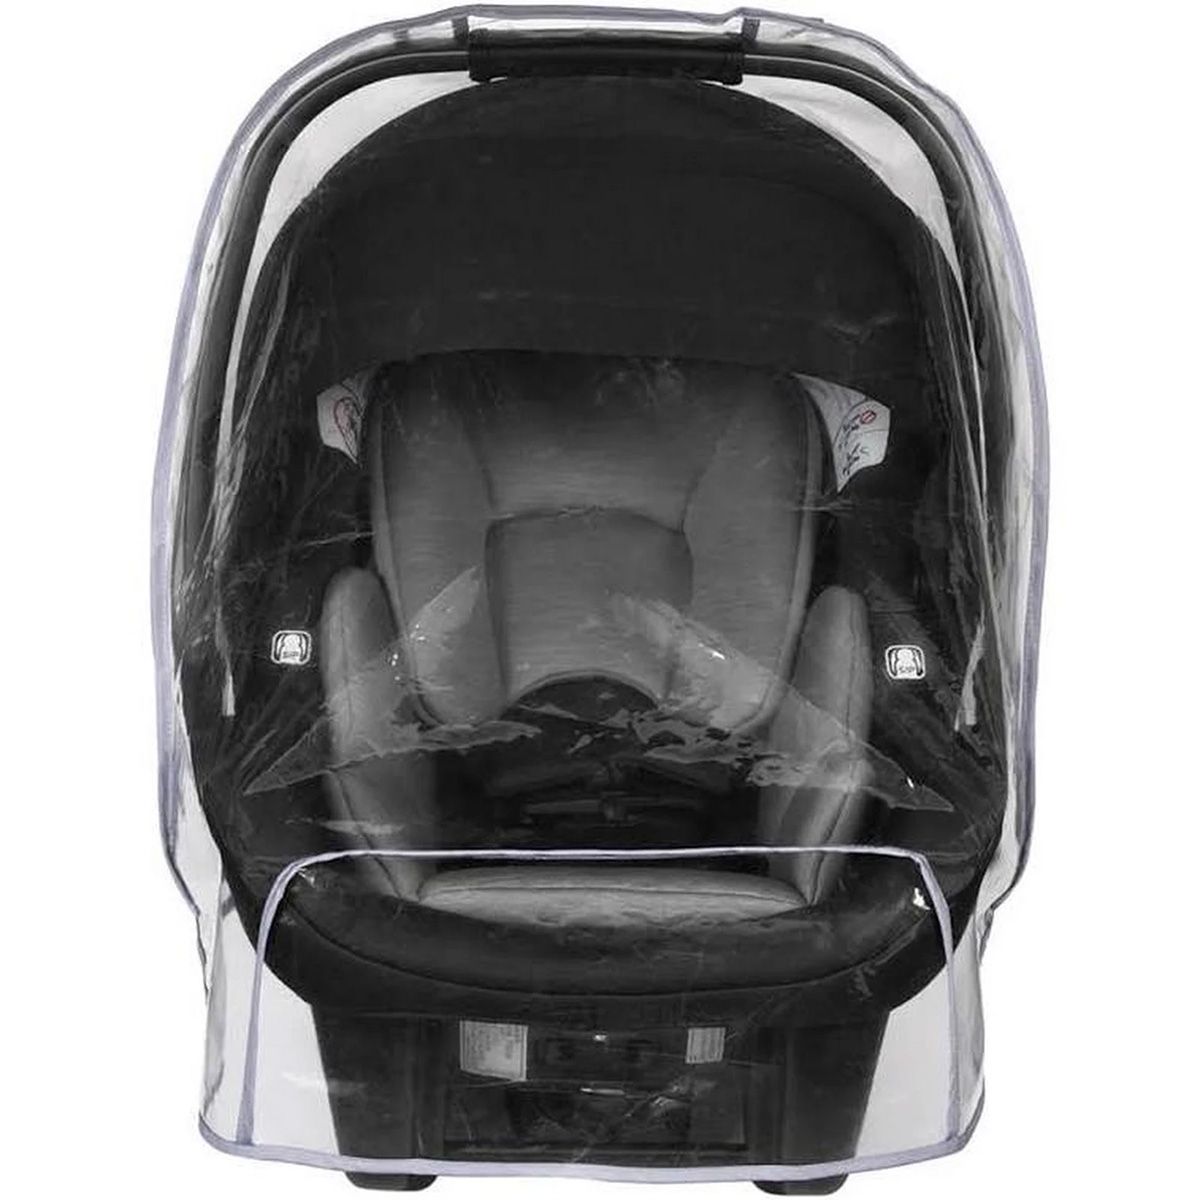 Nuna Pipa Infant Car Seat Rain Cover